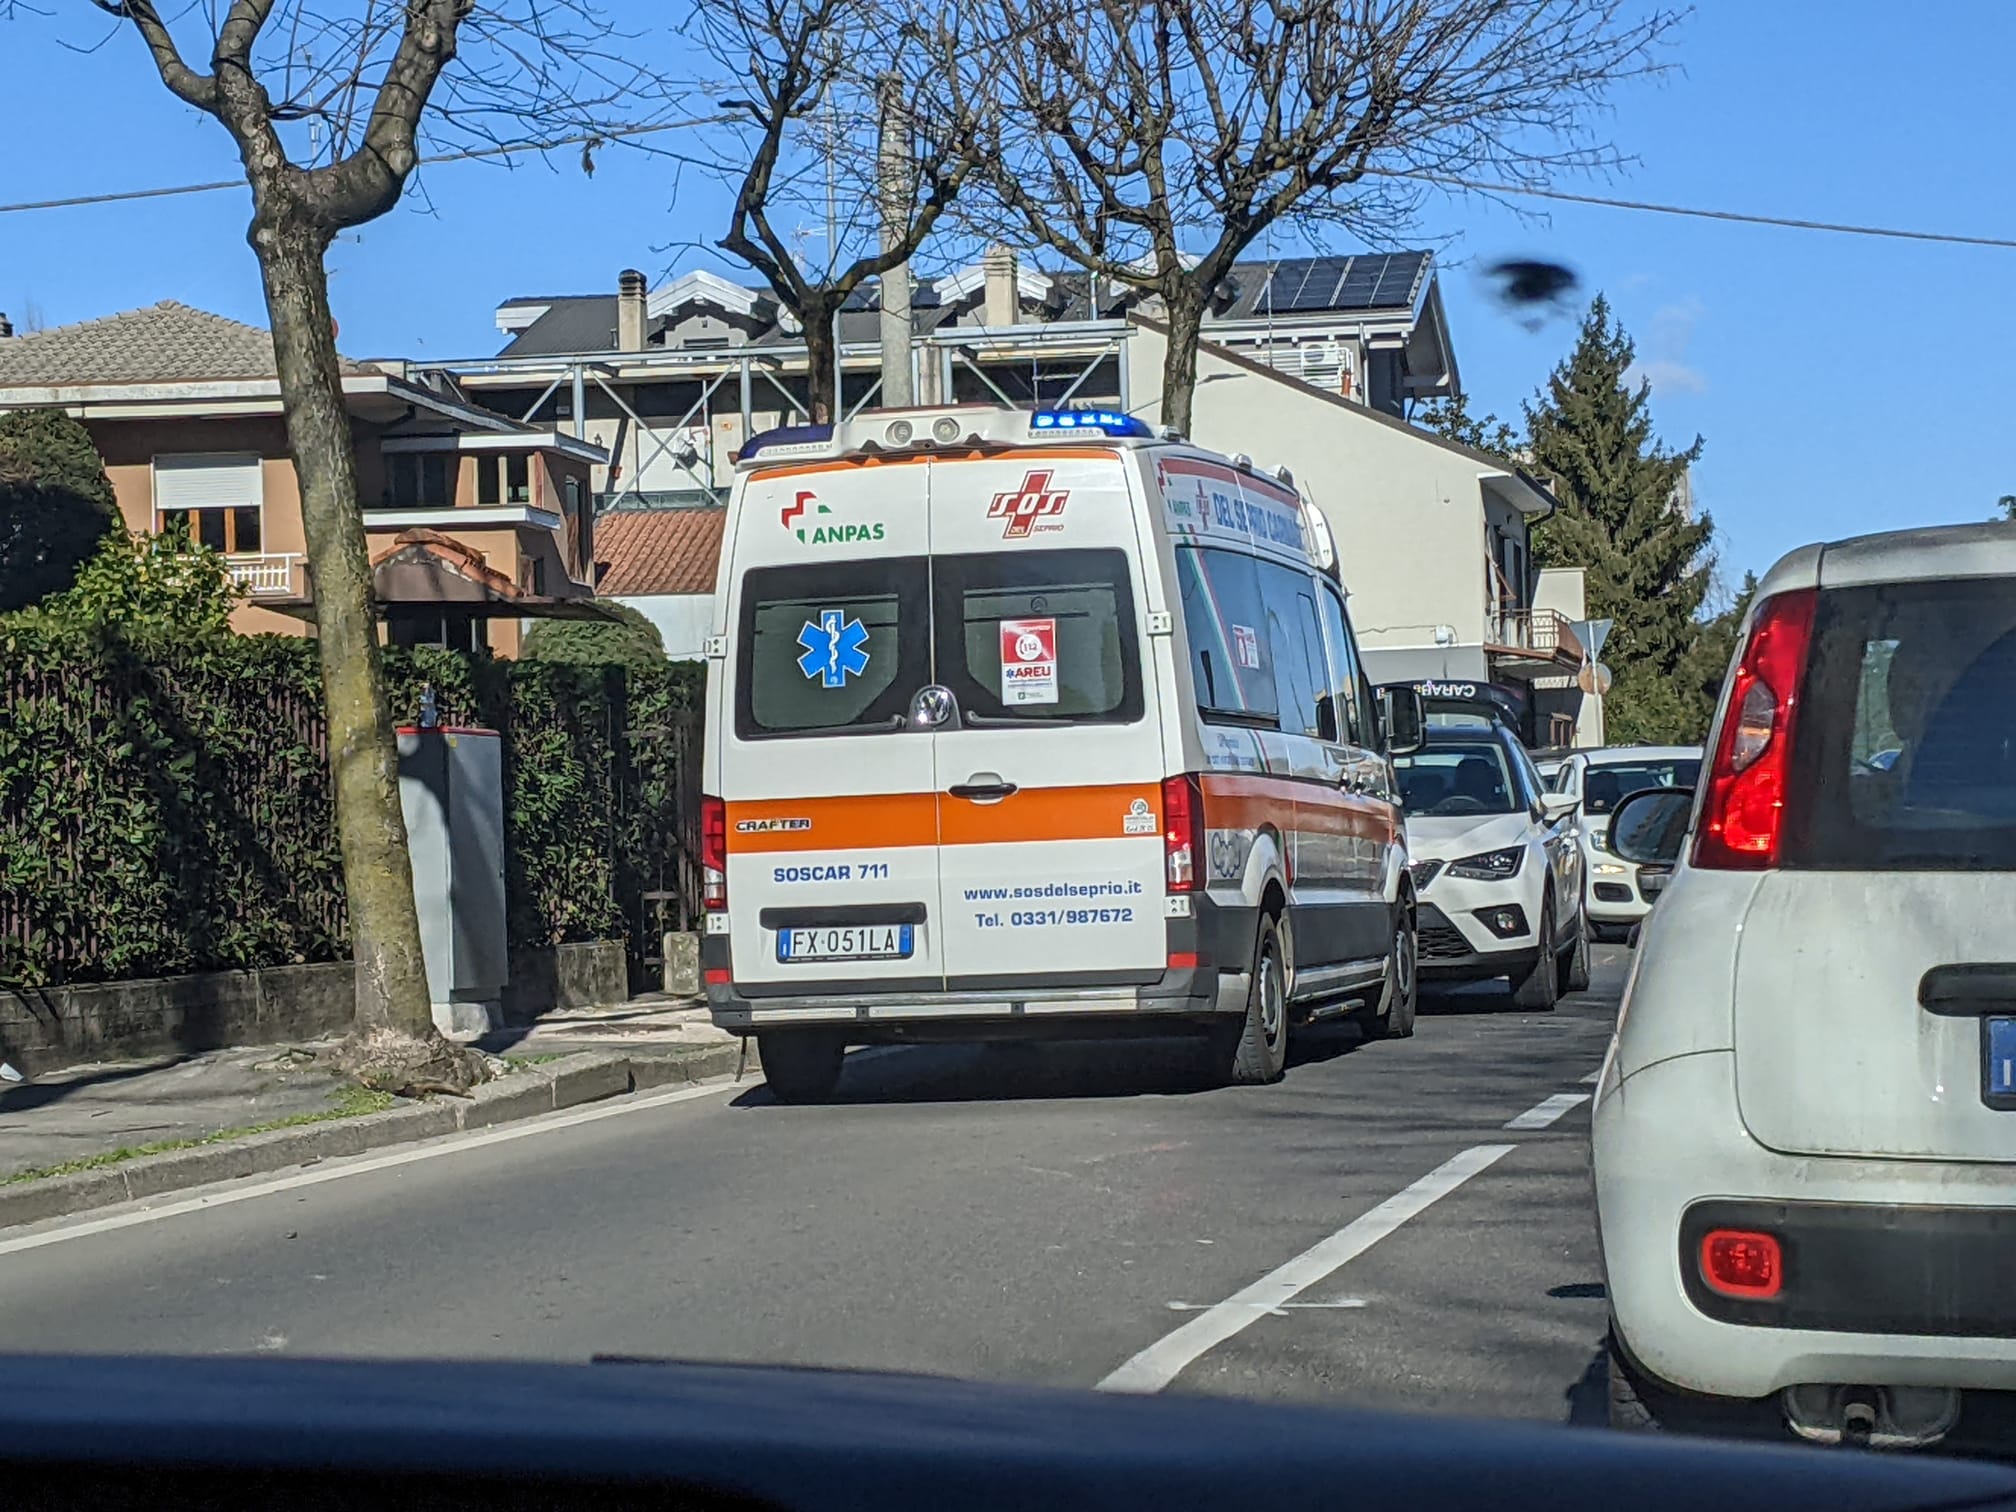 Scontro auto-moto in via Miola a Saronno: ragazza ferita e traffico rallentato